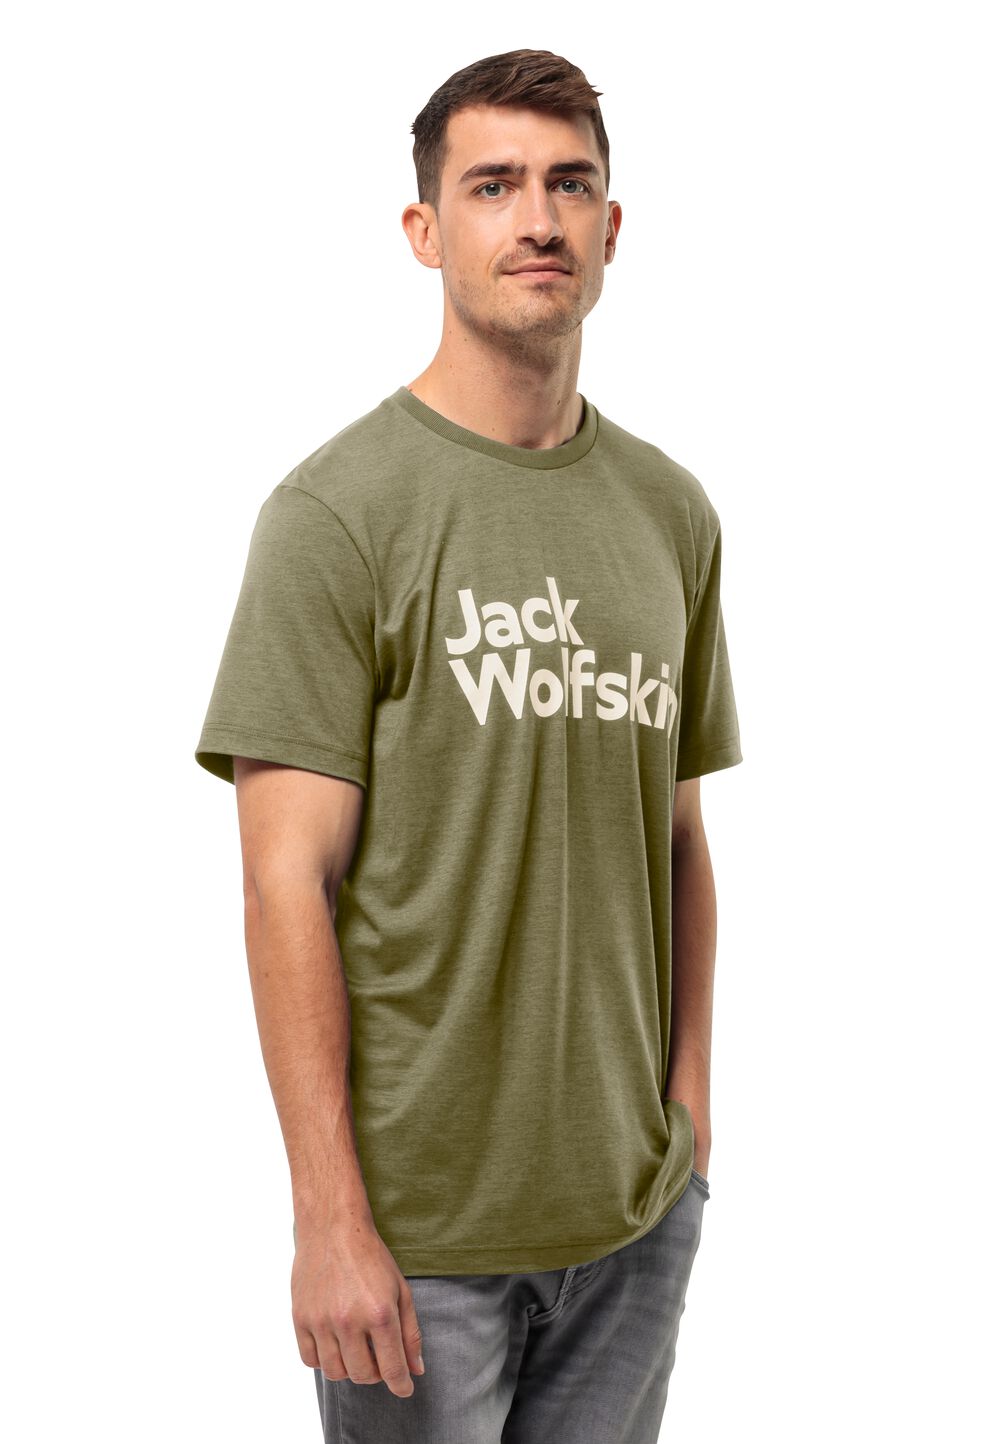 Jack Wolfskin Funktionsshirt Herren Brand T-Shirt Men XL braun bay leaf von Jack Wolfskin